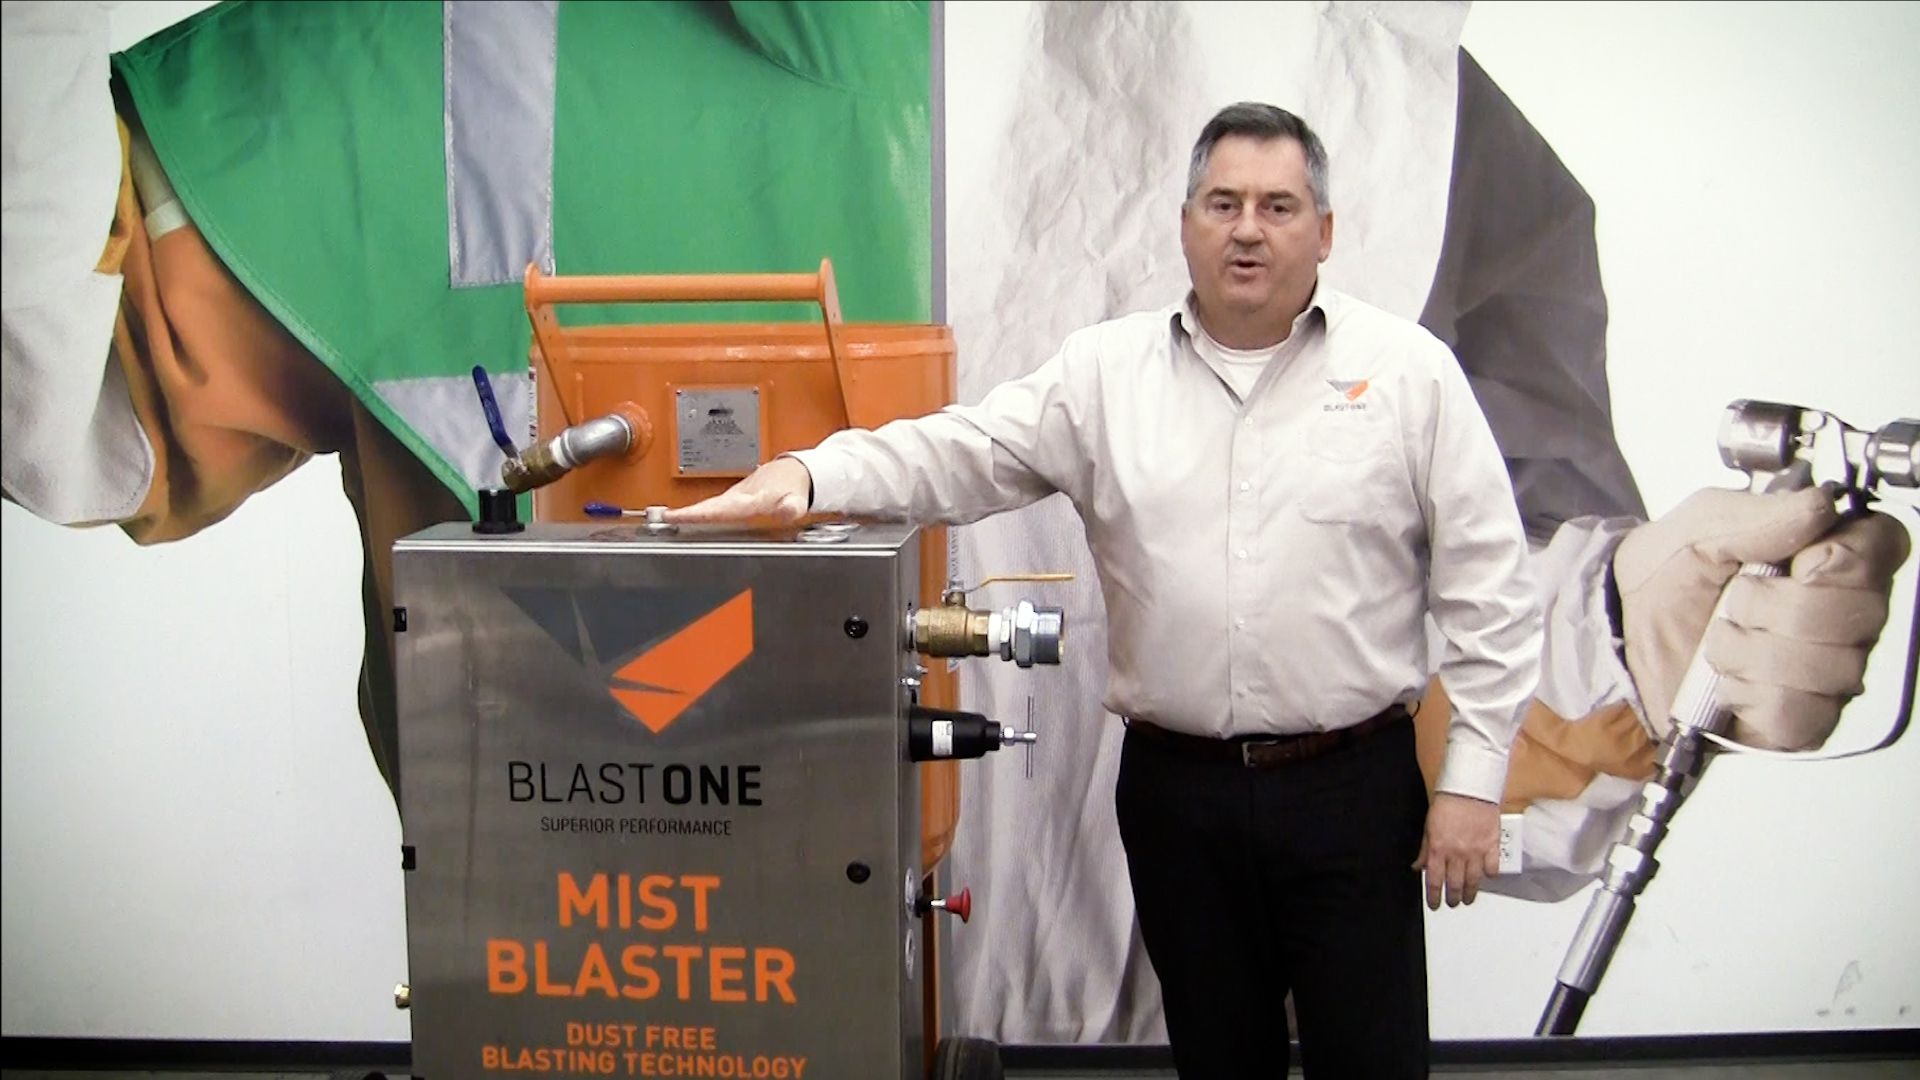 Mist Blaster Primed Insight Thumb